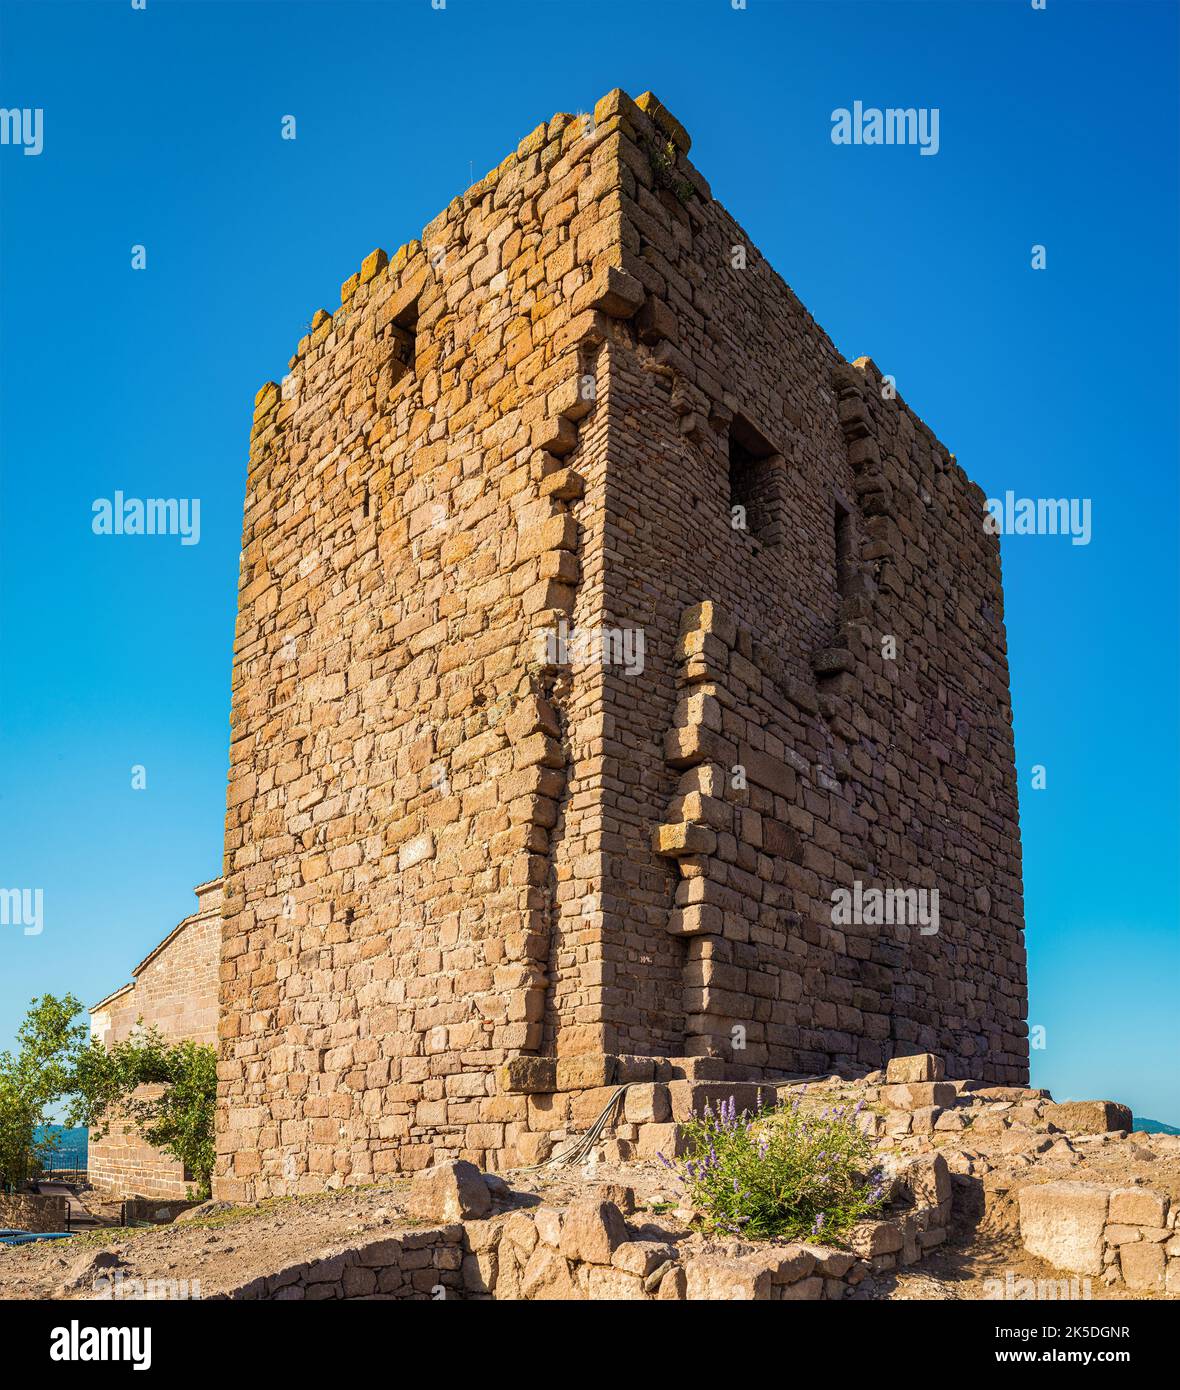 Ruines de la ville antique d'Assos à Behramkale. Canakkale, Turquie Banque D'Images